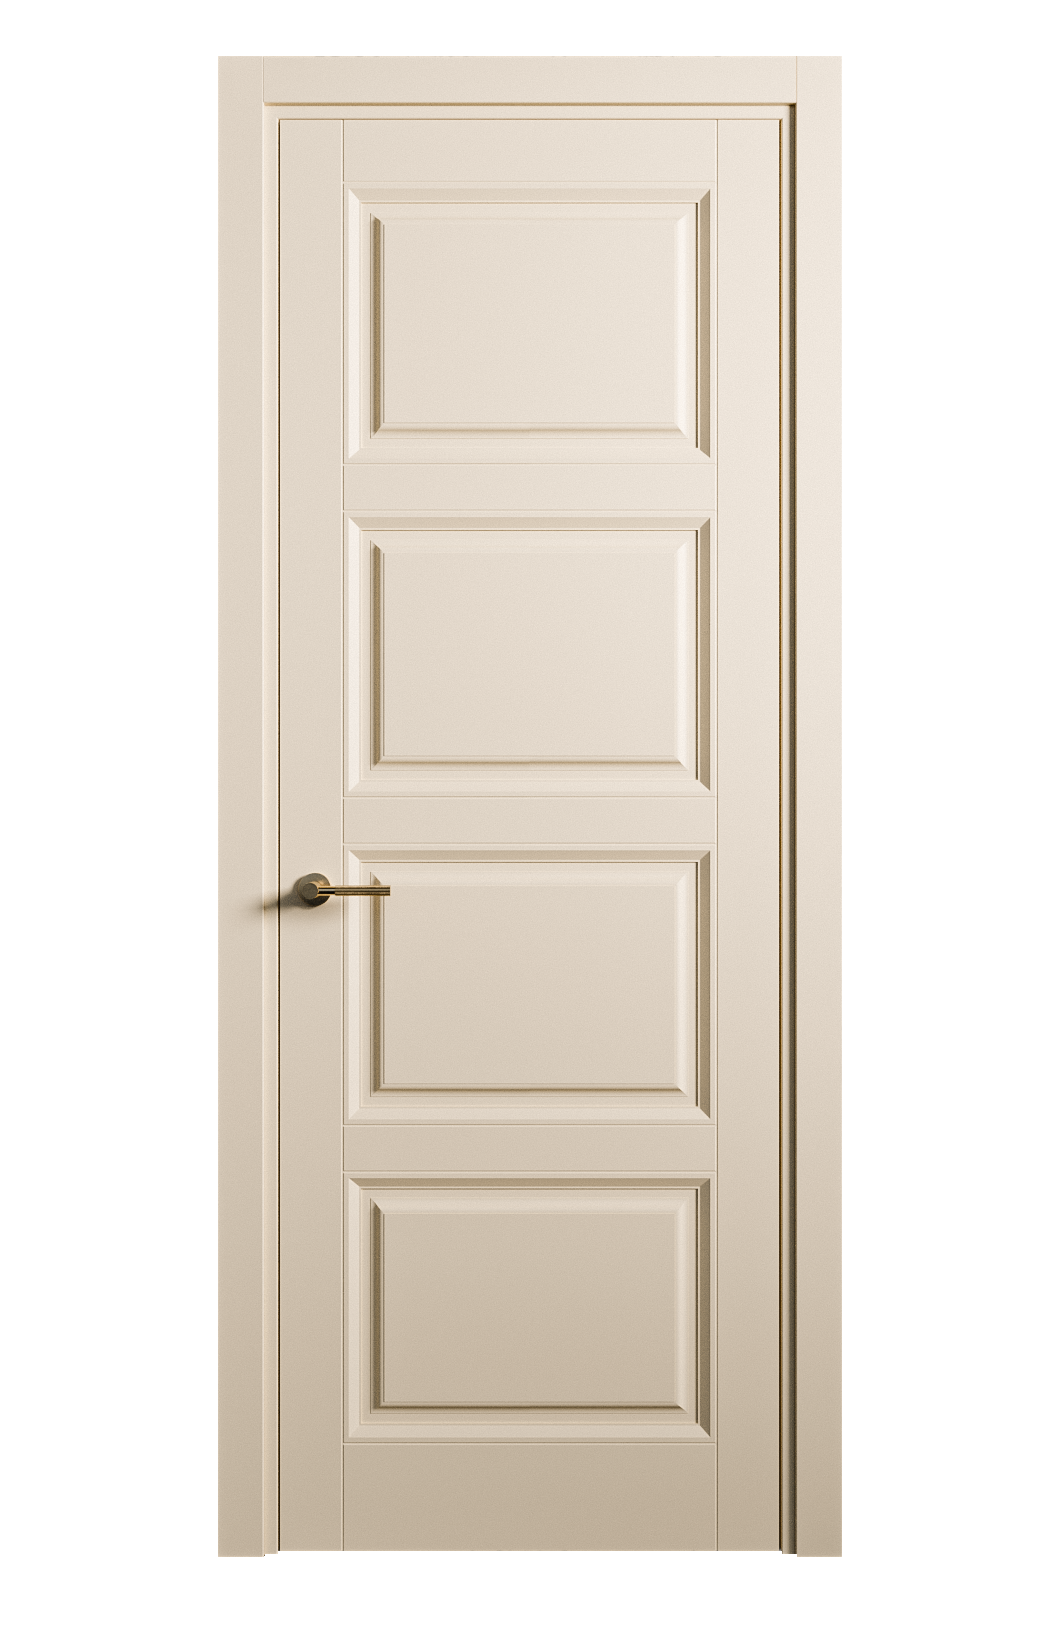 Межкомнатная дверь Venezia-4 глухая эмаль ral 1015 25805